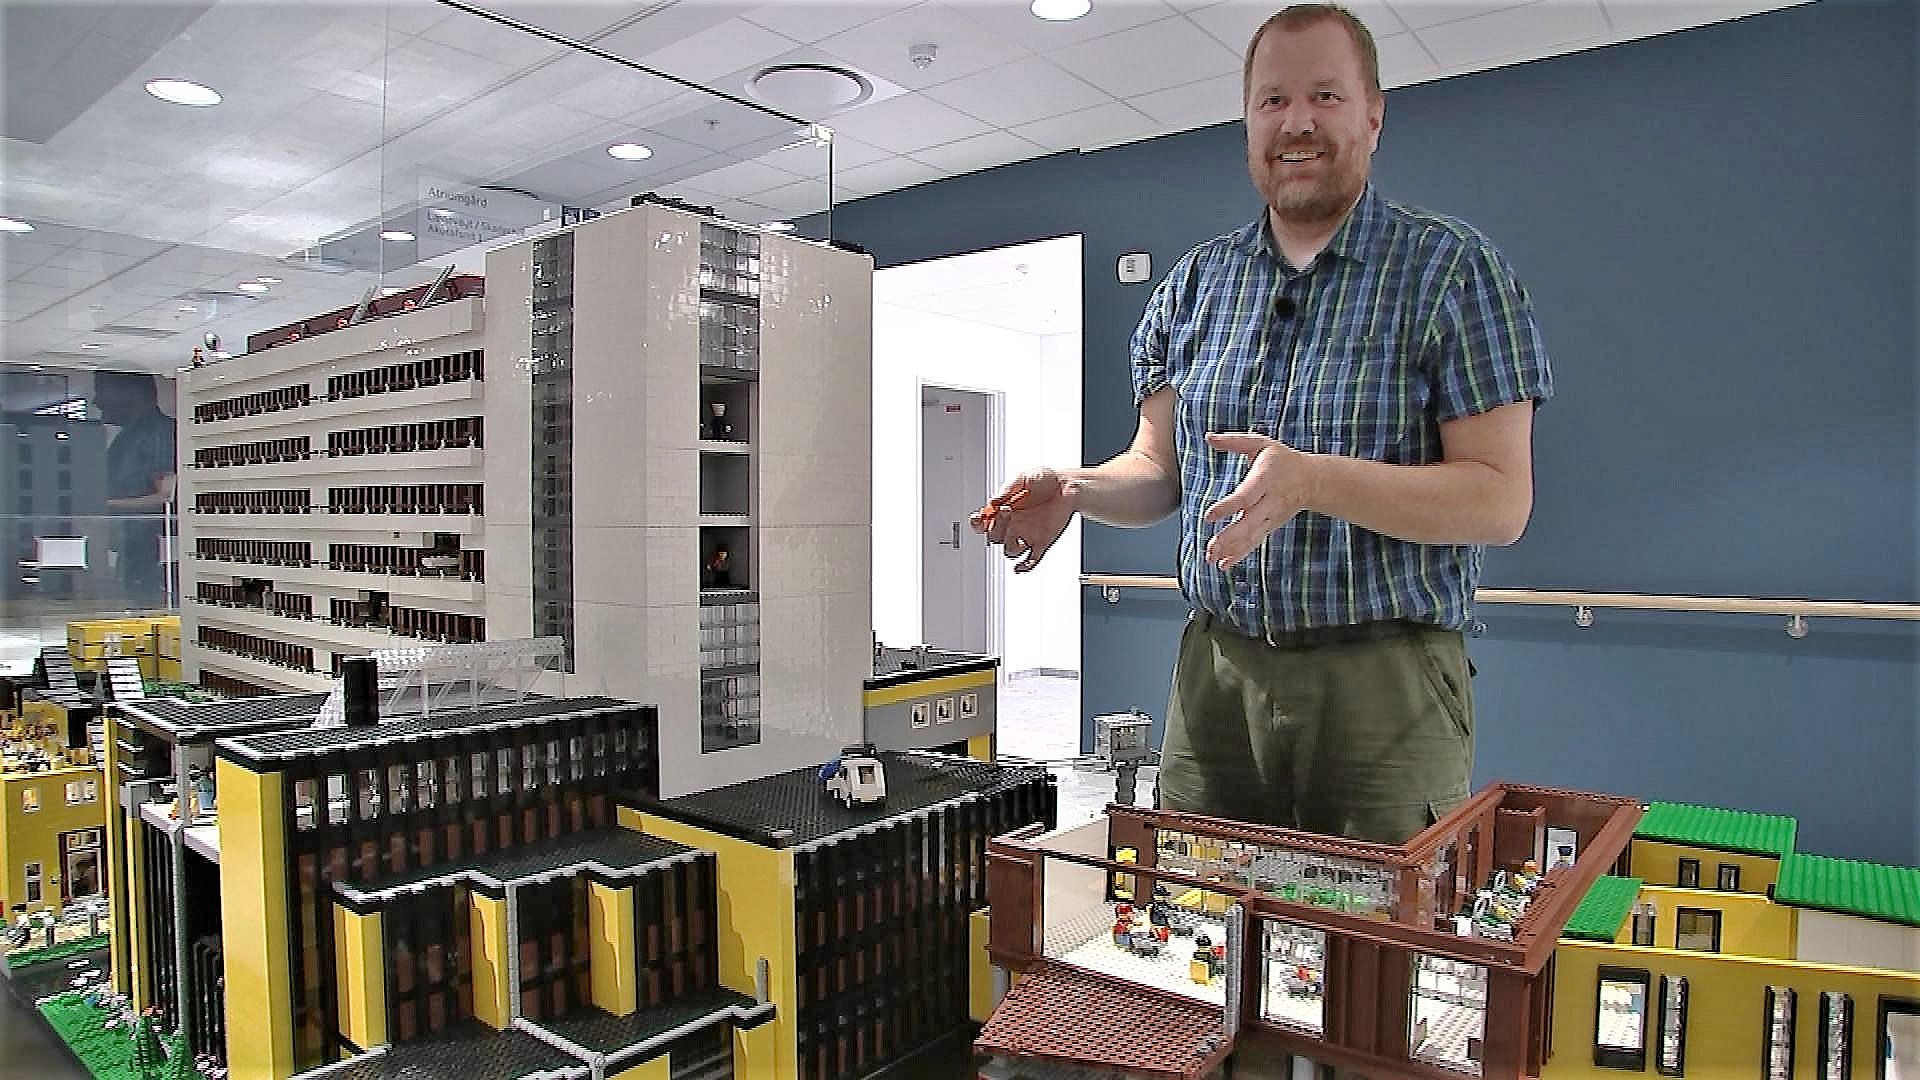 Billy udstilling Regn Anders har bygget hospital i Lego – har brugt hundredtusindvis af klodser |  TV MIDTVEST